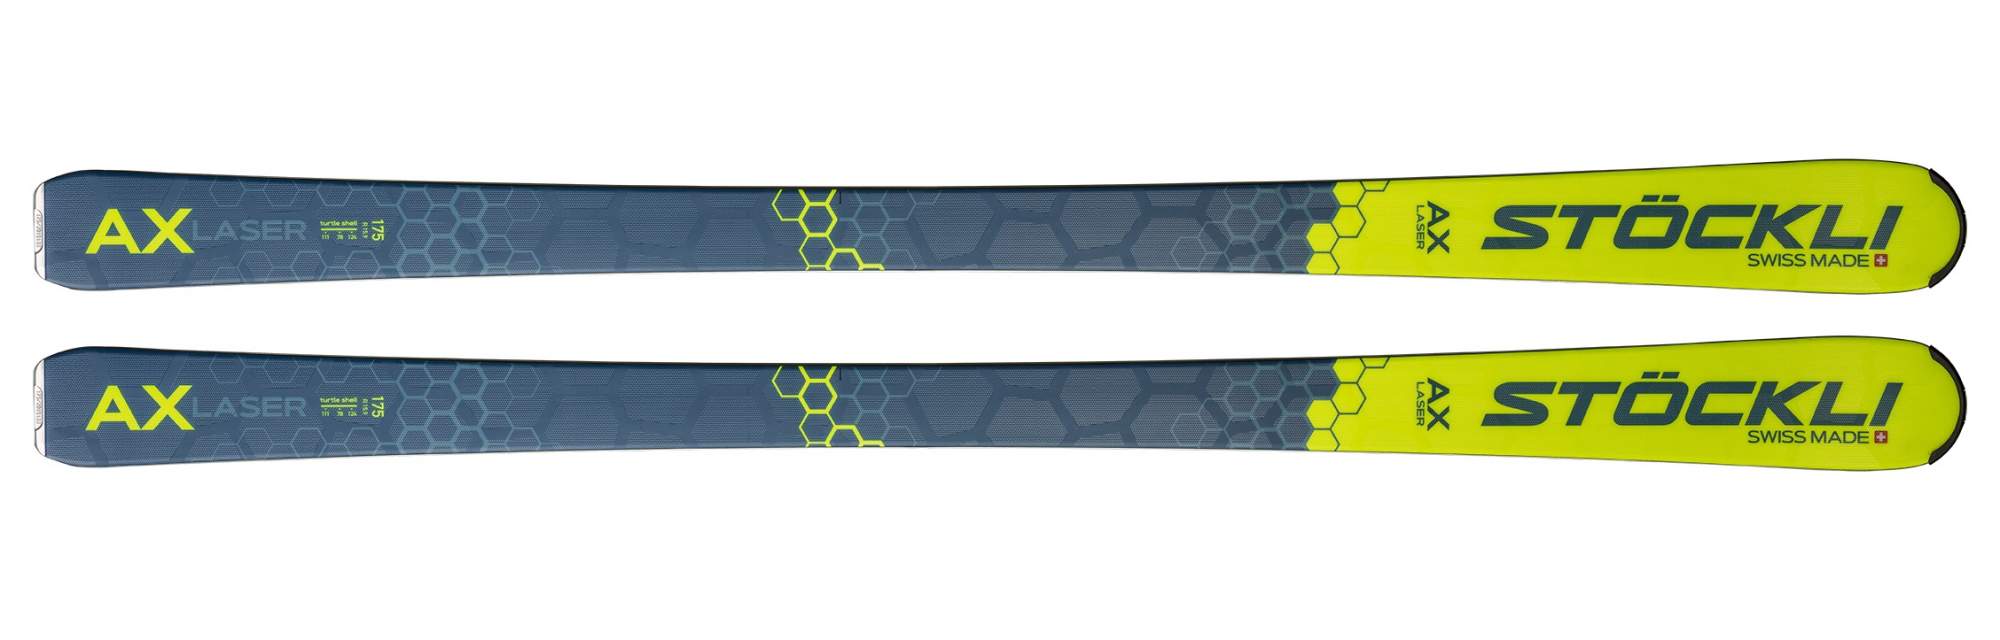 Горные лыжи Stockli Laser AX + DXM 13 2022 blue/yellow, 182 см